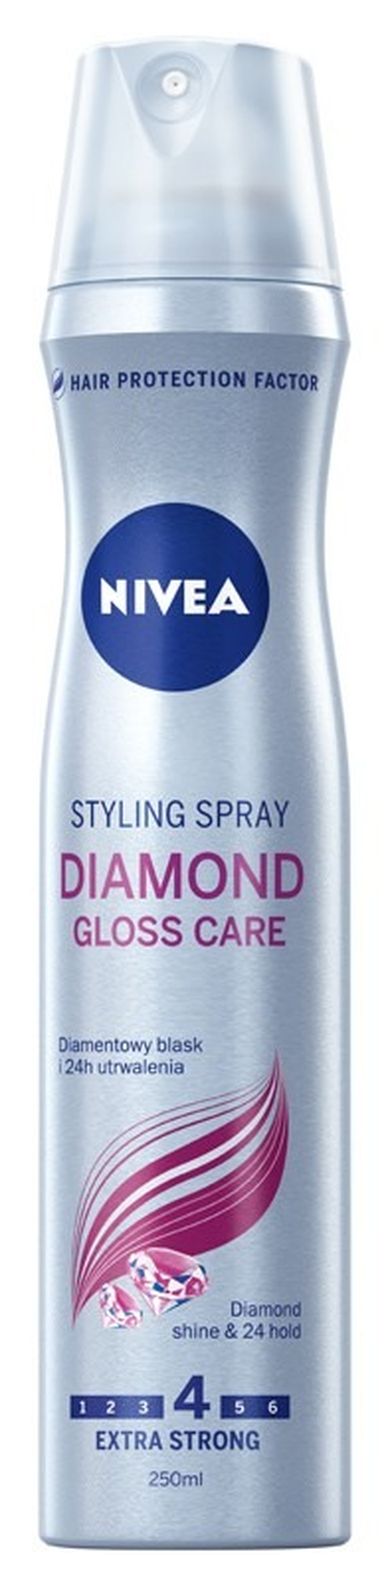 Nivea, Diamond Gloss Care, lakier do włosów, 250 ml